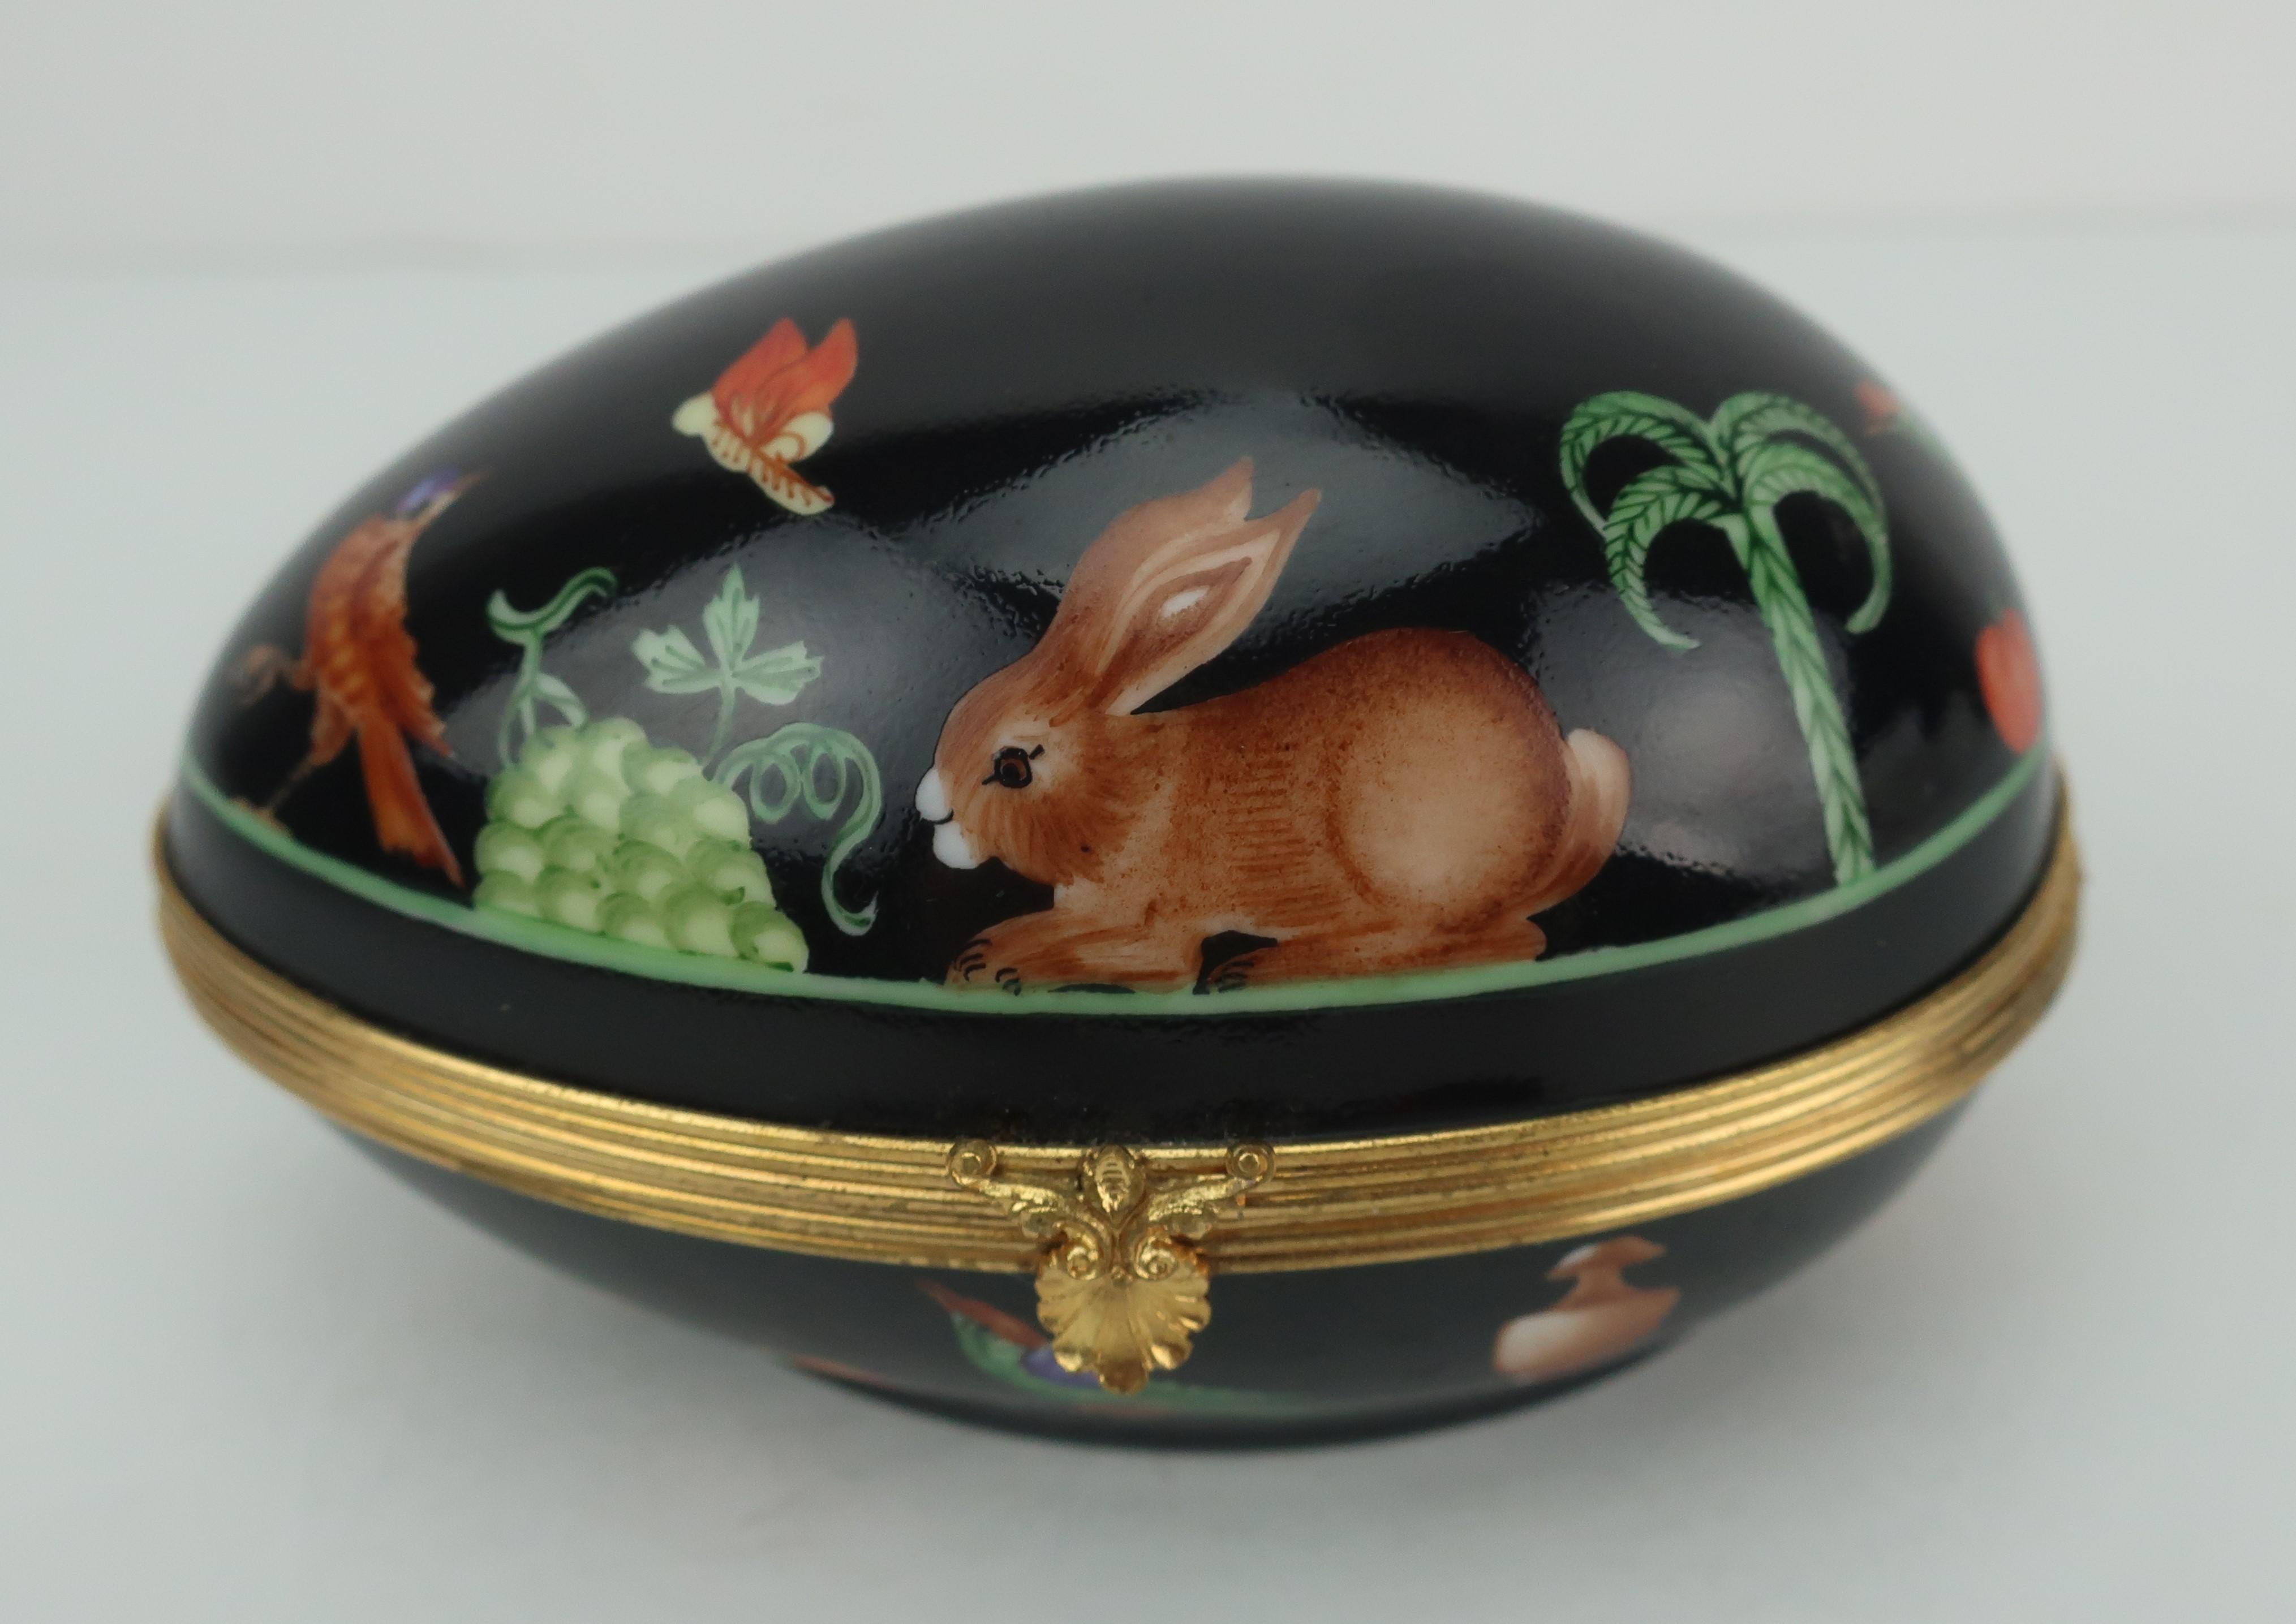 Noir Boîte à œufs en porcelaine de Limoges Le Tallec for Tiffany & Co. à bandoulière noire